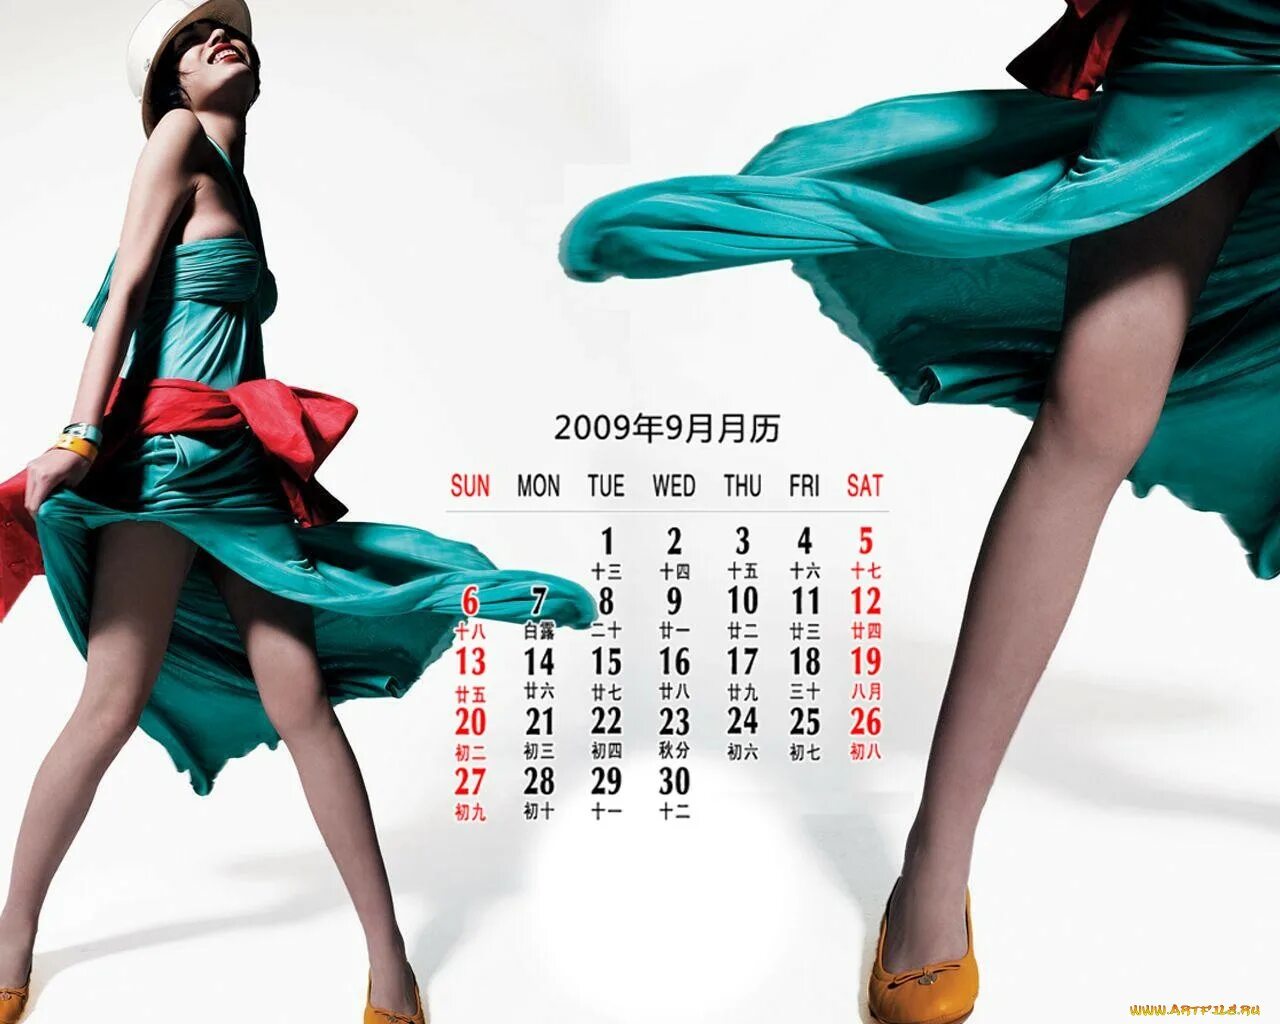 Календарь 1024. Китайские календари с девушками. Японские календари с девушками. Календарь с японками. Календарь с девушками.